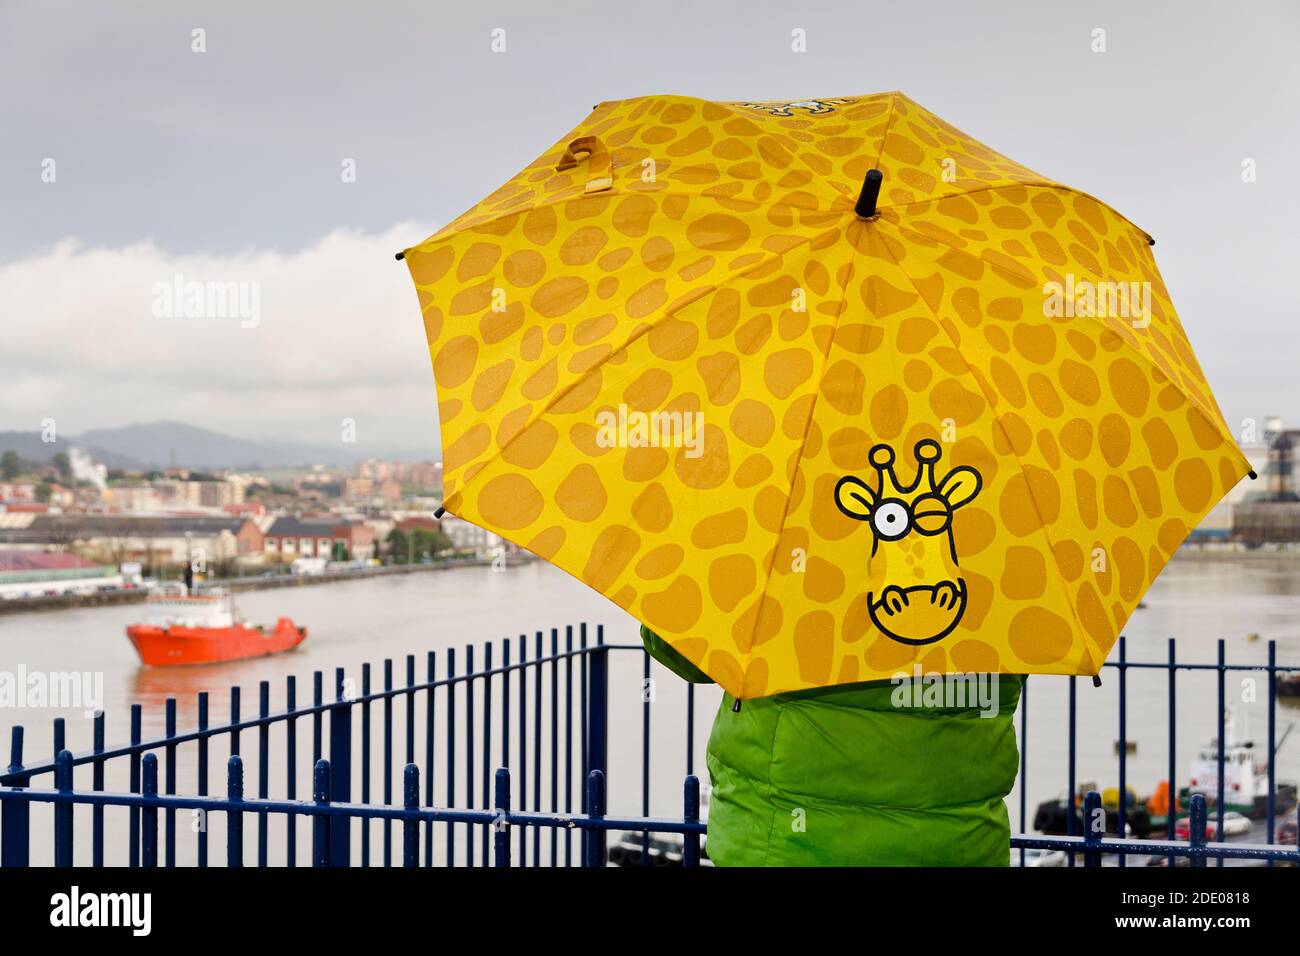 Niño de detrás observa el estuario en la lluvia, su paraguas tiene un dibujo de jirafa Foto de stock